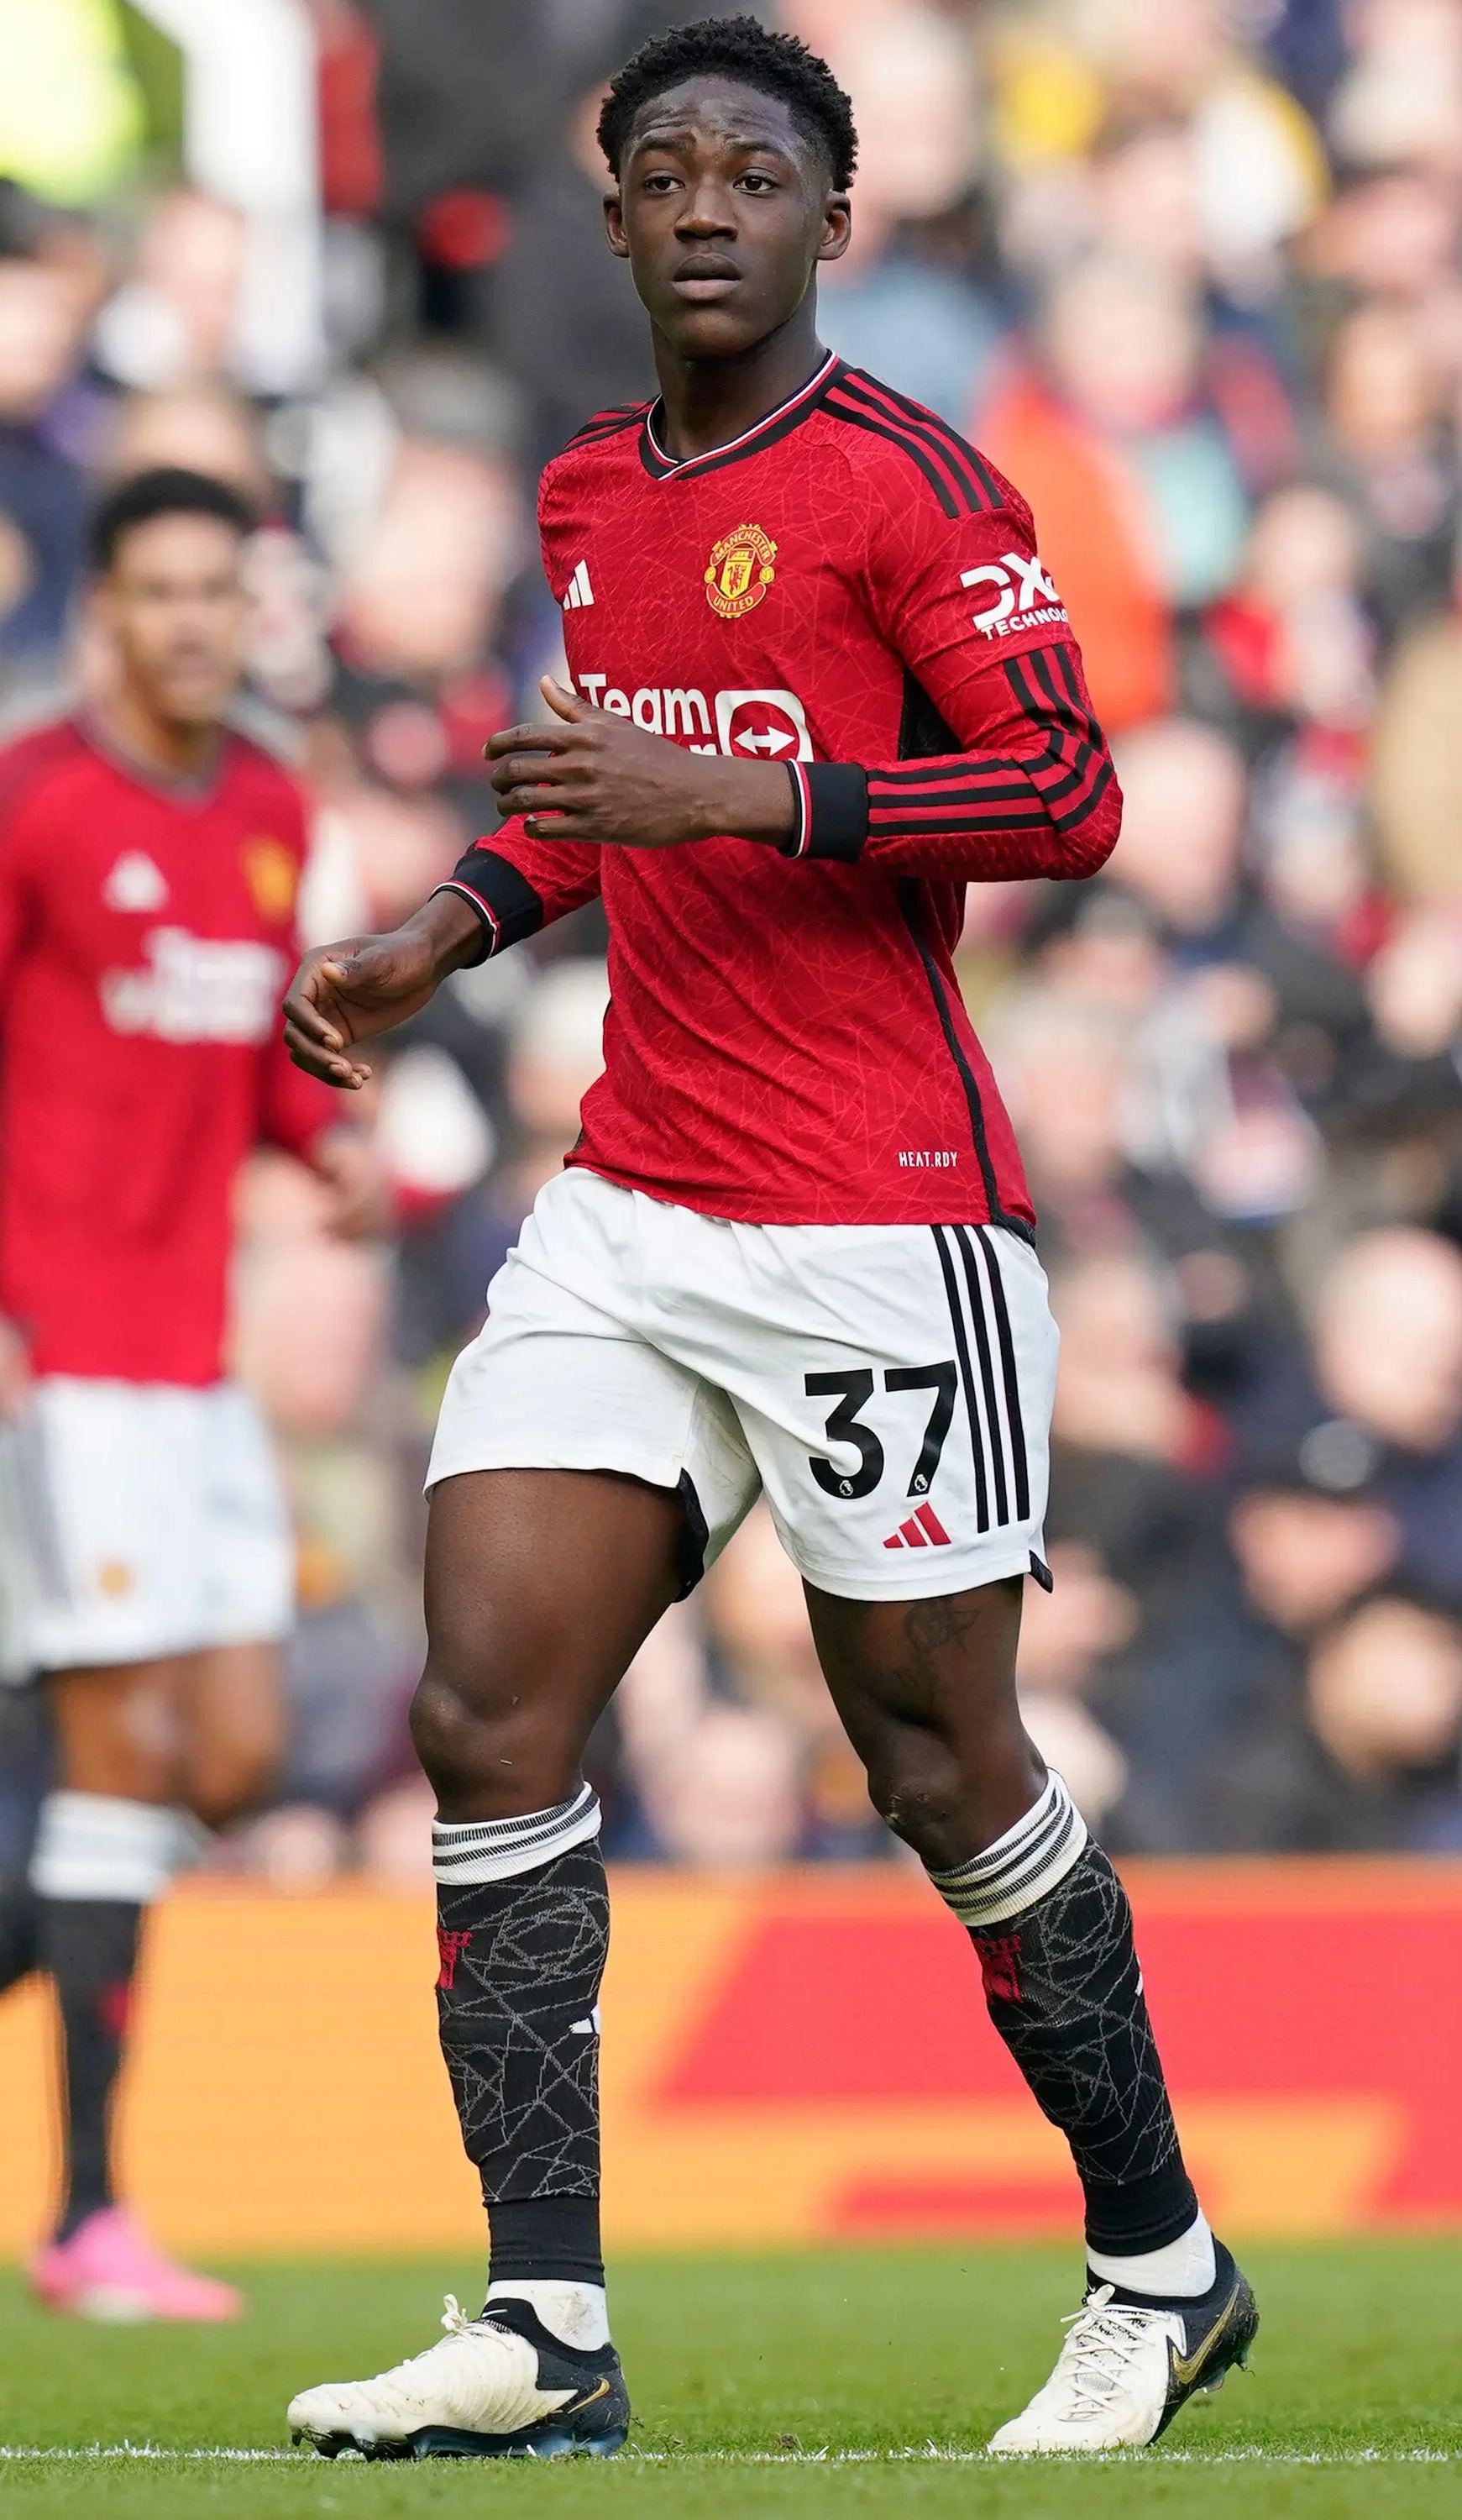 Mainoo war in dieser Saison bislang sensationell für Manchester United